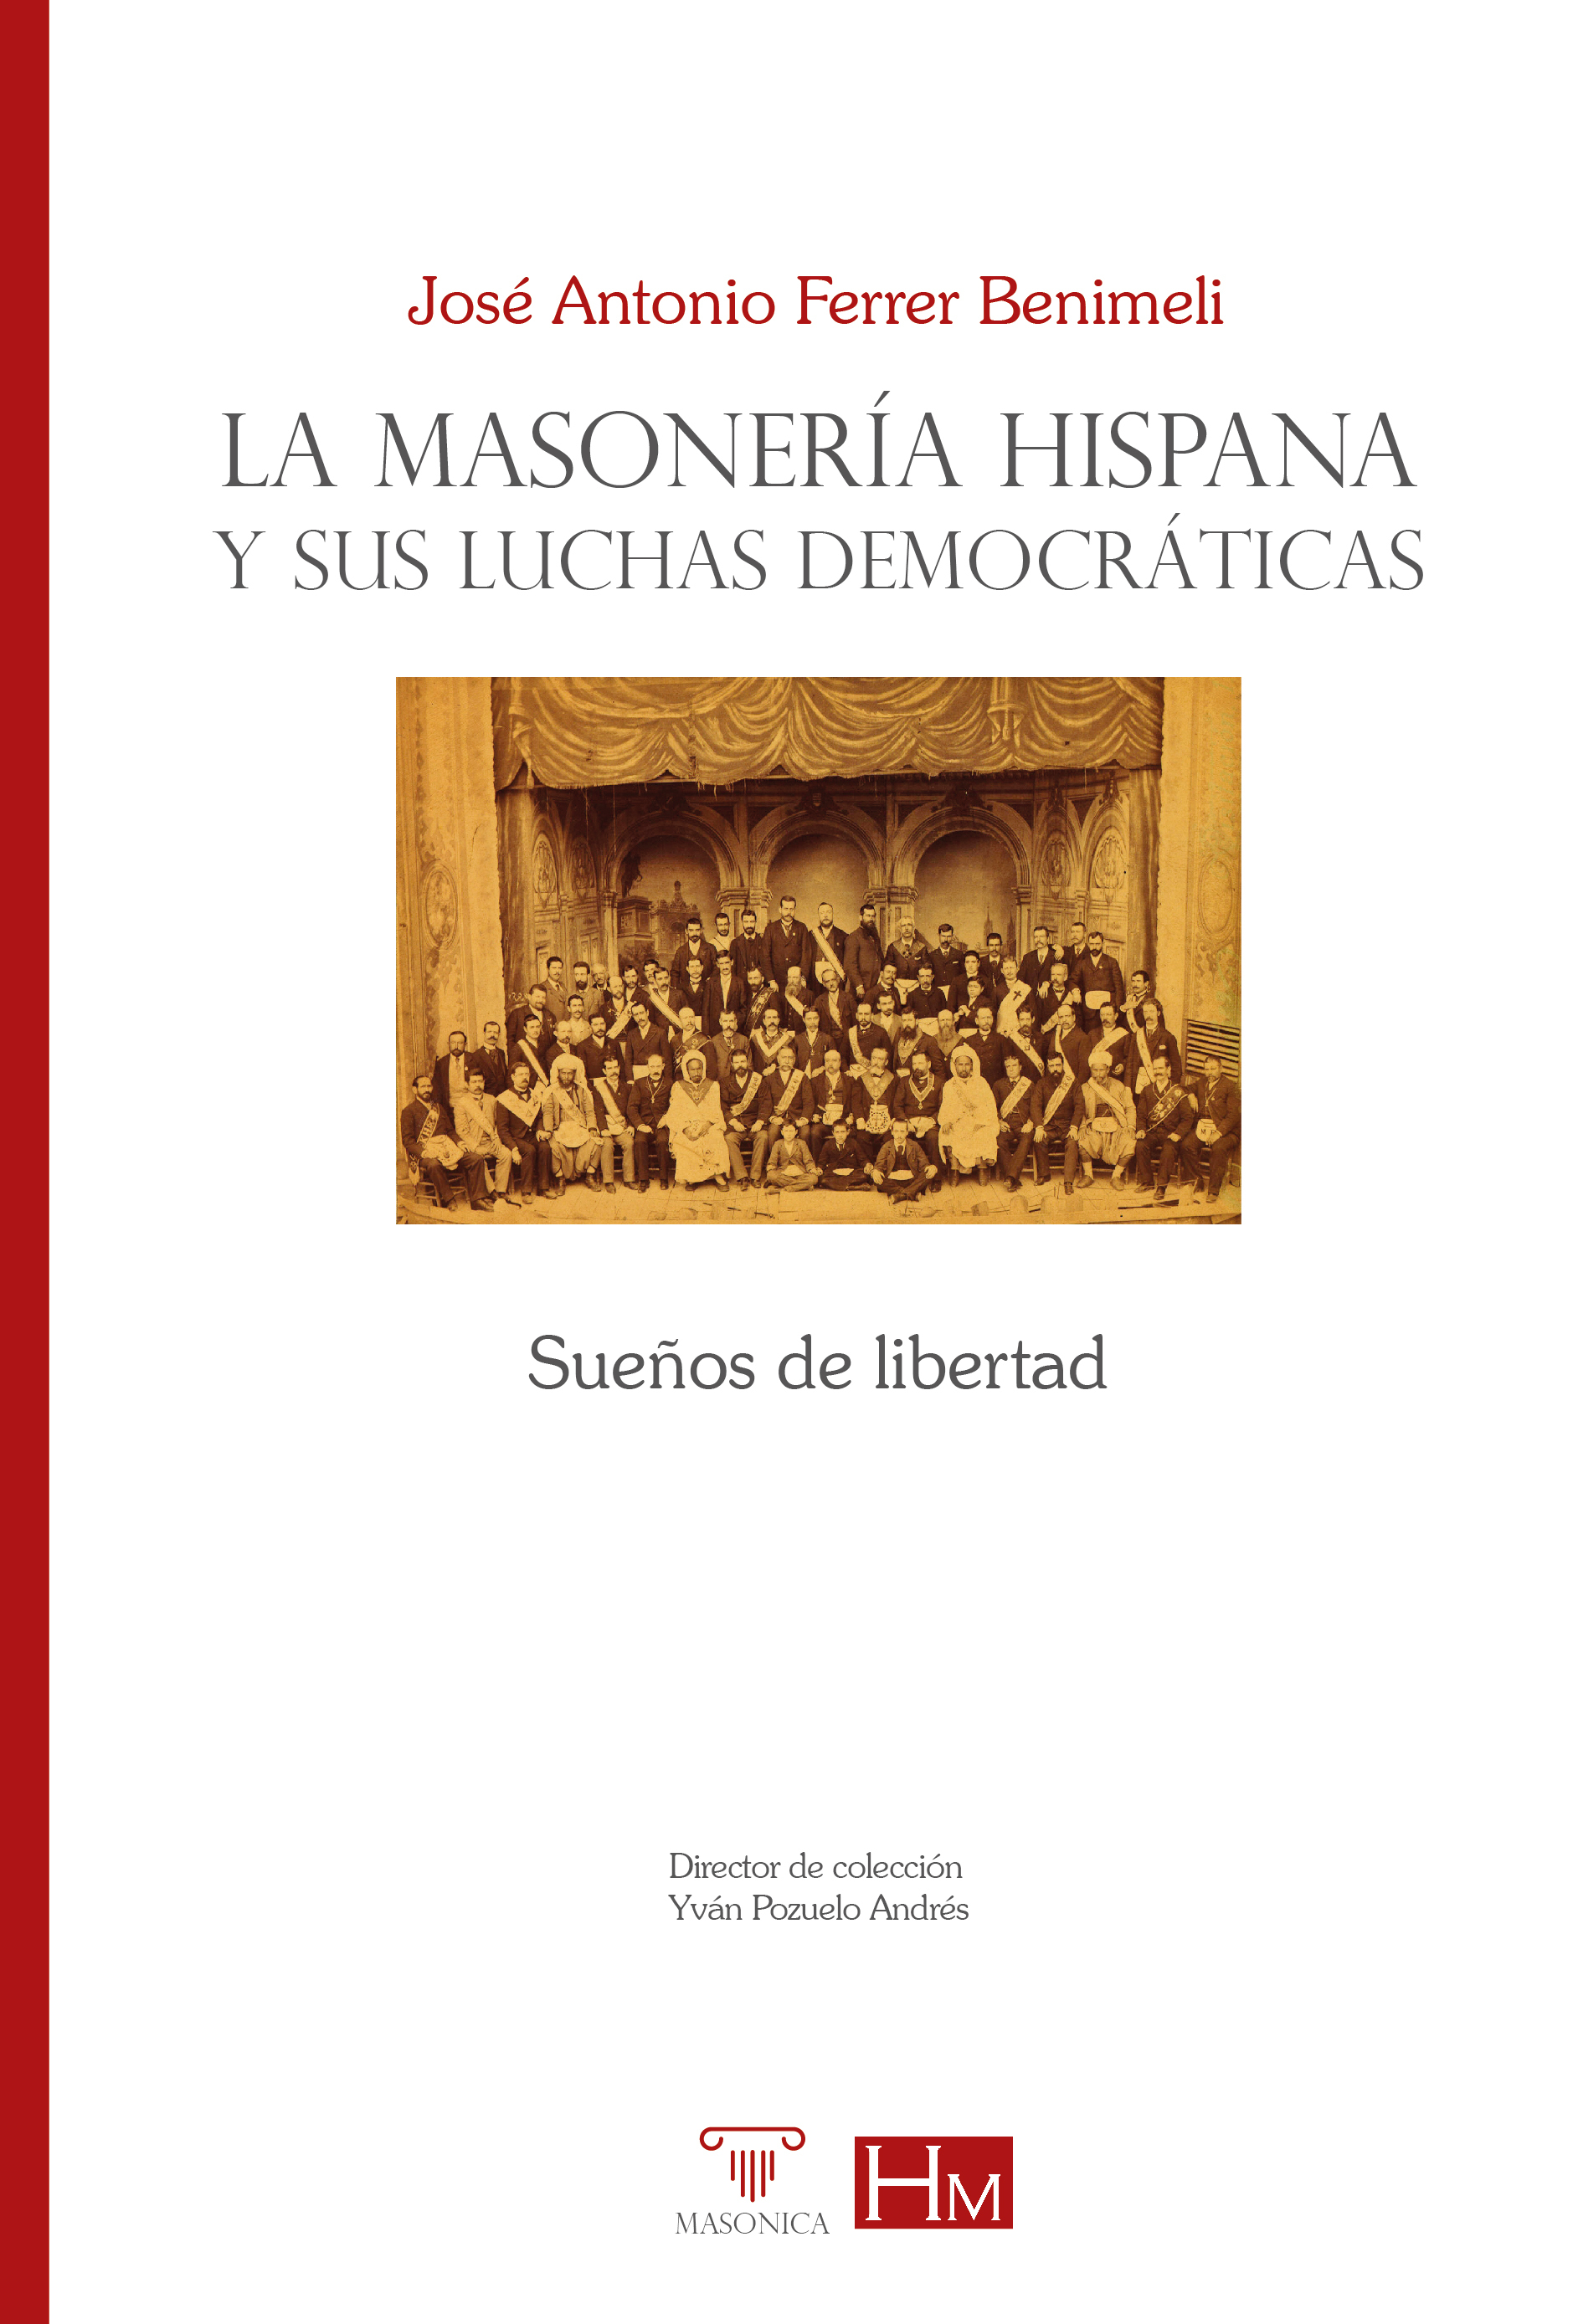 Imagen de portada del libro La masonería hispana y sus luchas democráticas